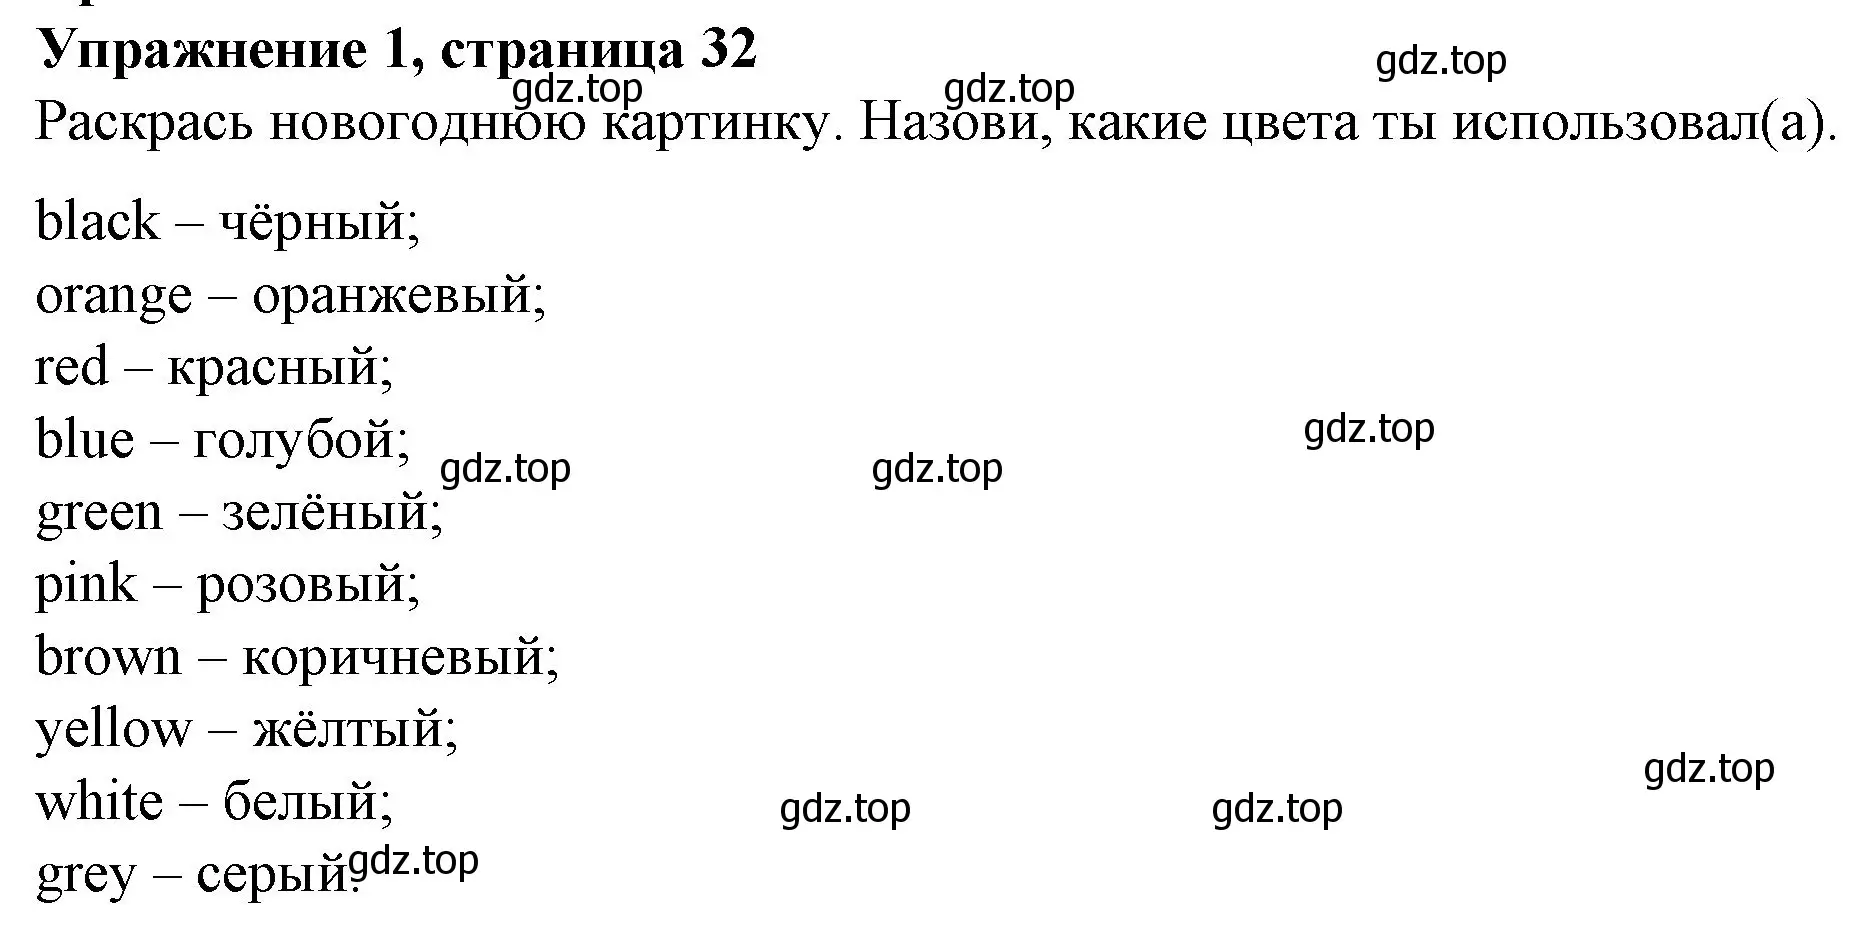 Решение номер 1 (страница 32) гдз по английскому языку 3 класс Биболетова, Денисенко, рабочая тетрадь